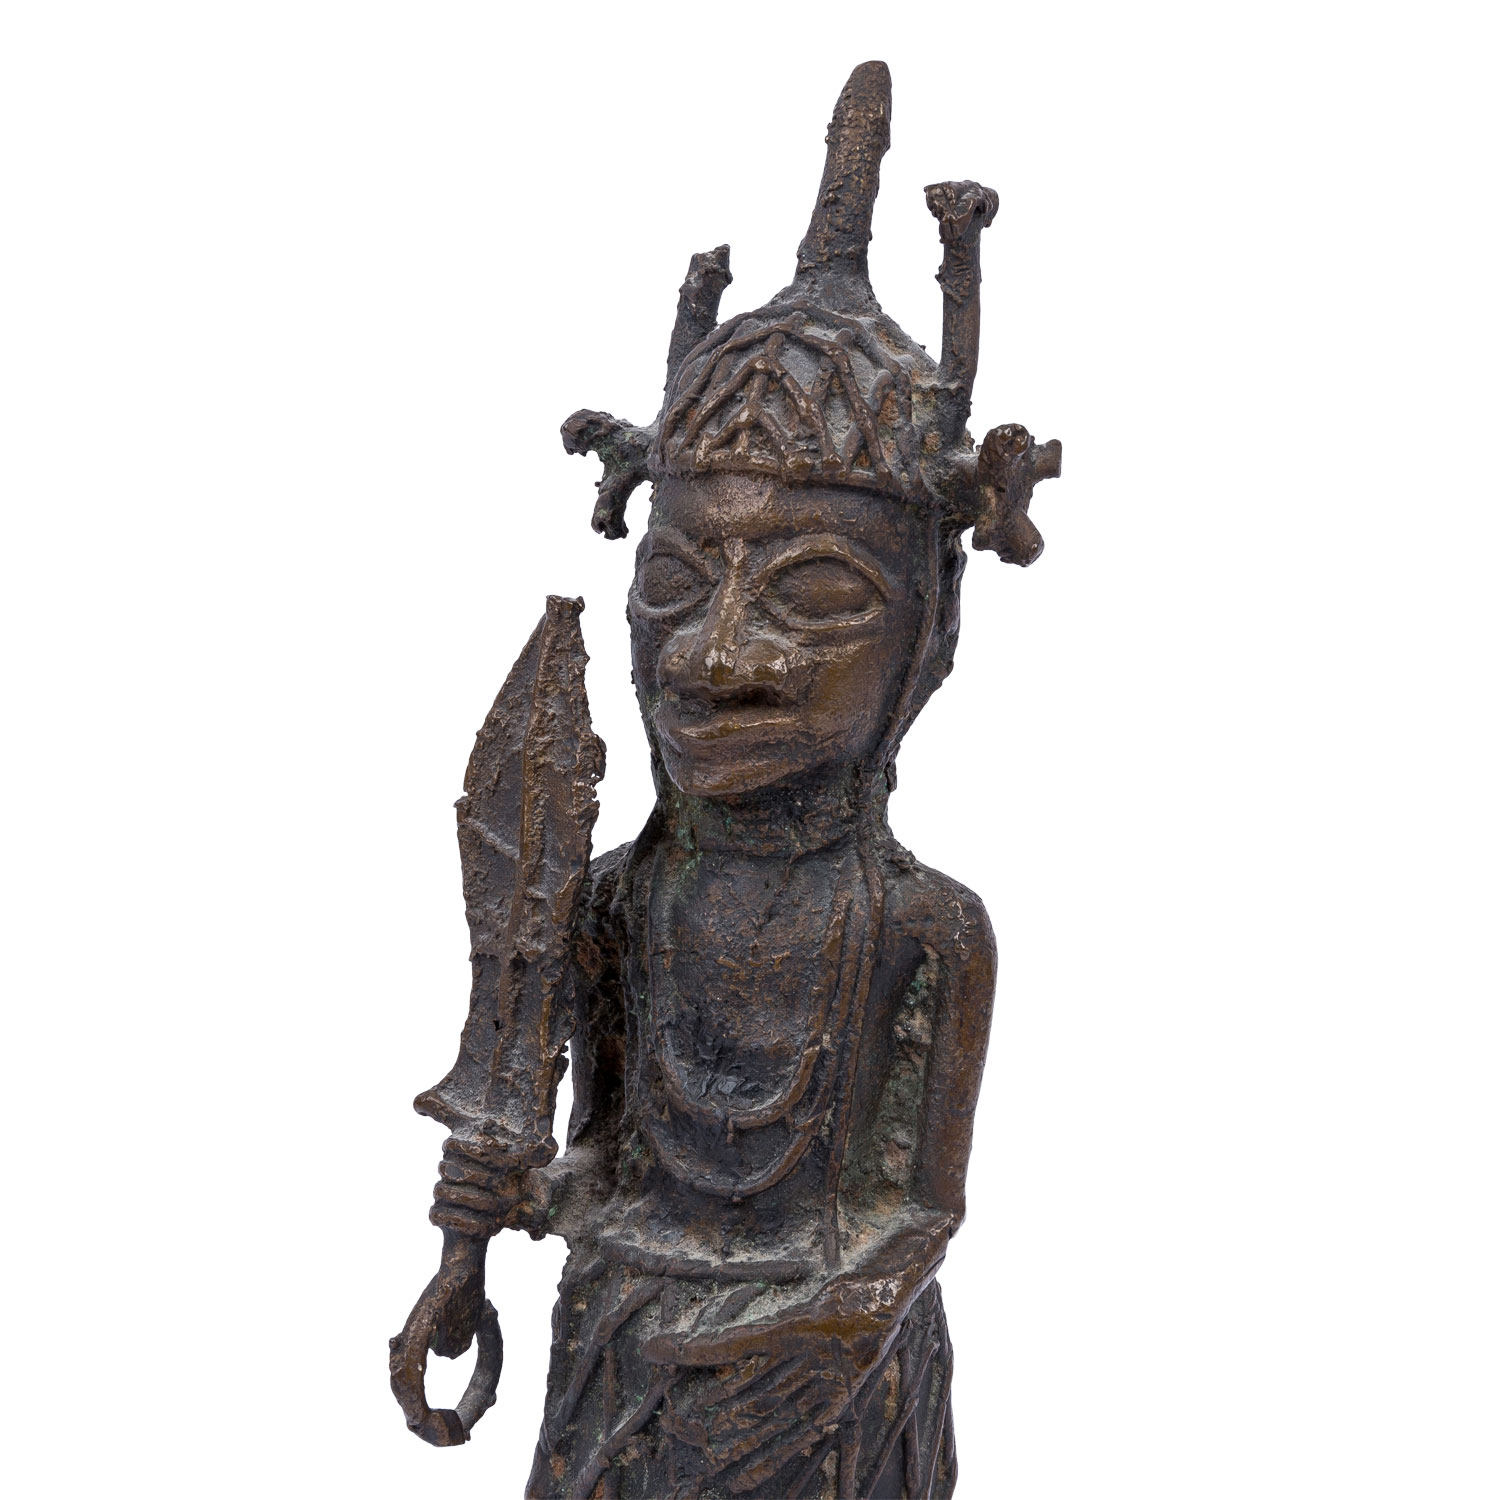 Benin Krieger aus Bronze. NIGERIA/AFRIKA, 19. Jh. oder früher. - Image 5 of 6